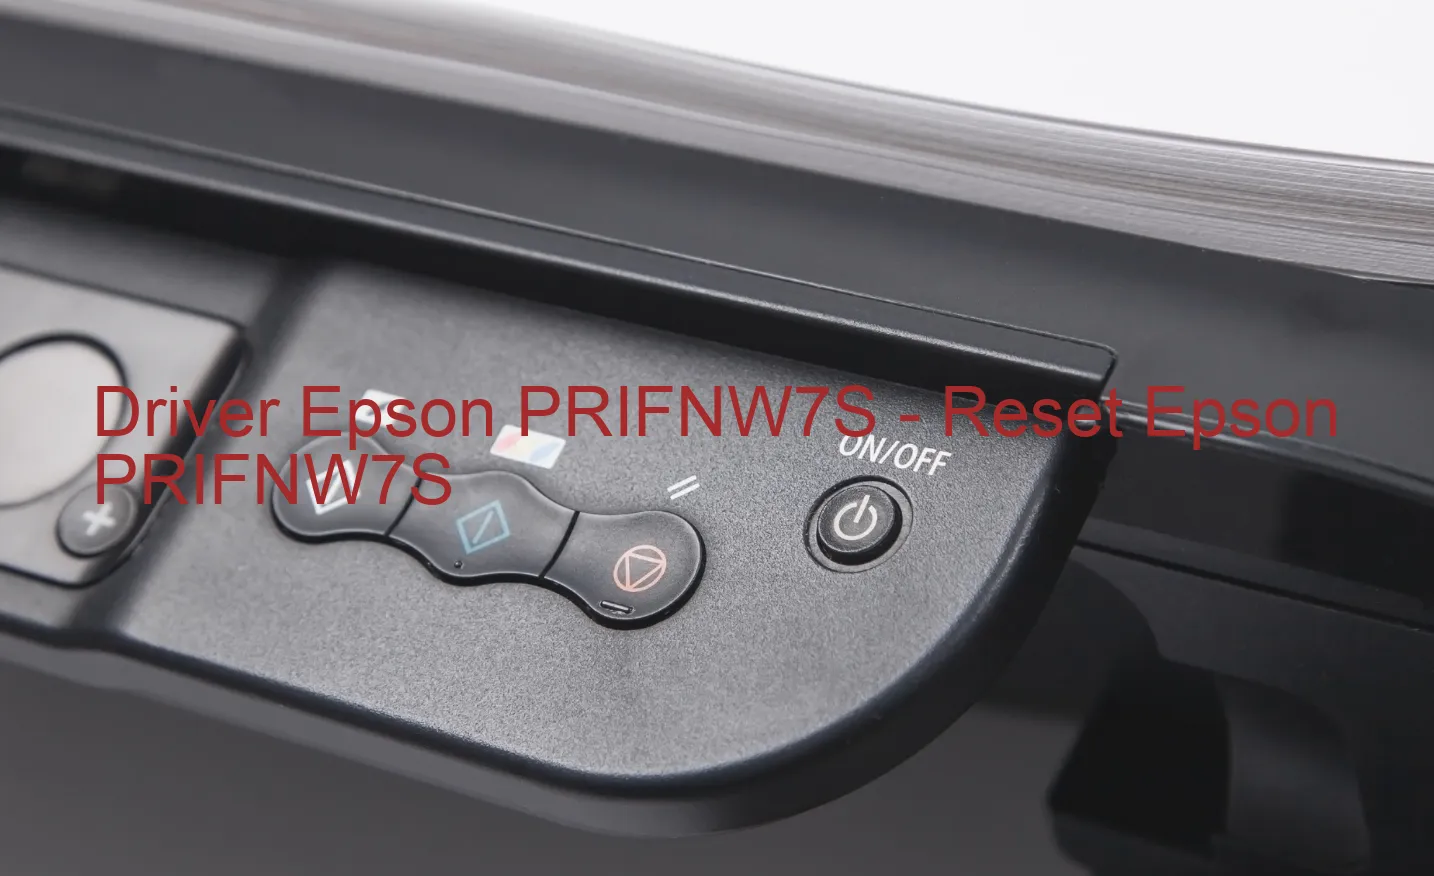 Epson PRIFNW7Sのドライバー、Epson PRIFNW7Sのリセットソフトウェア